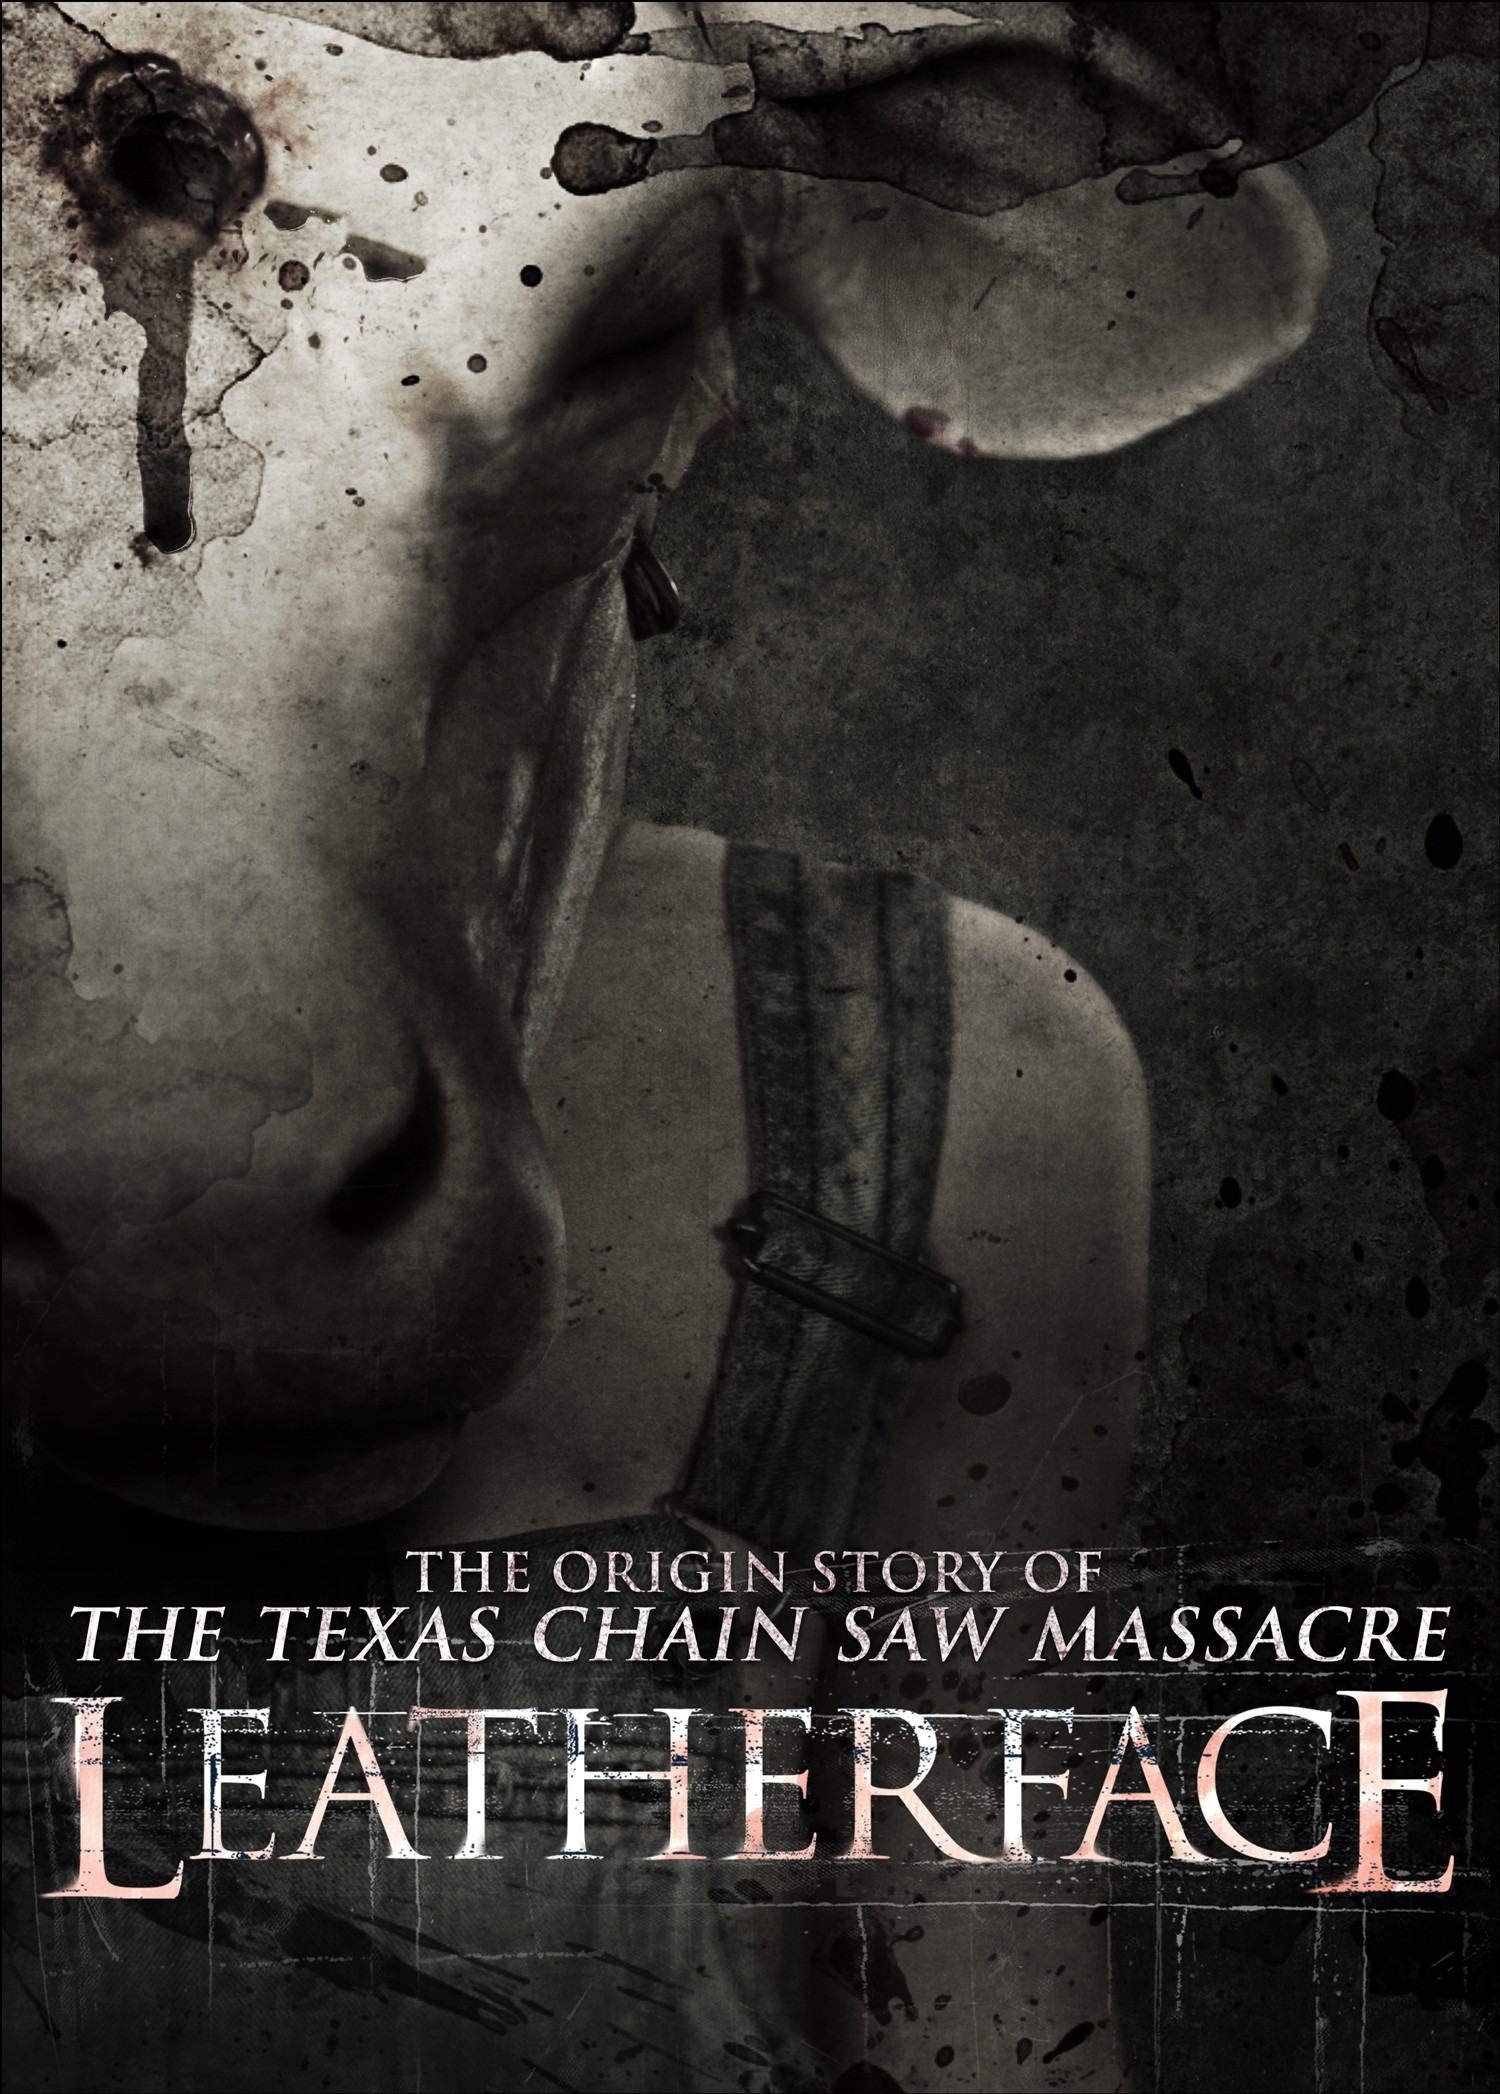 Техасская резня бензопилой: Кожаное лицо: постер N138860